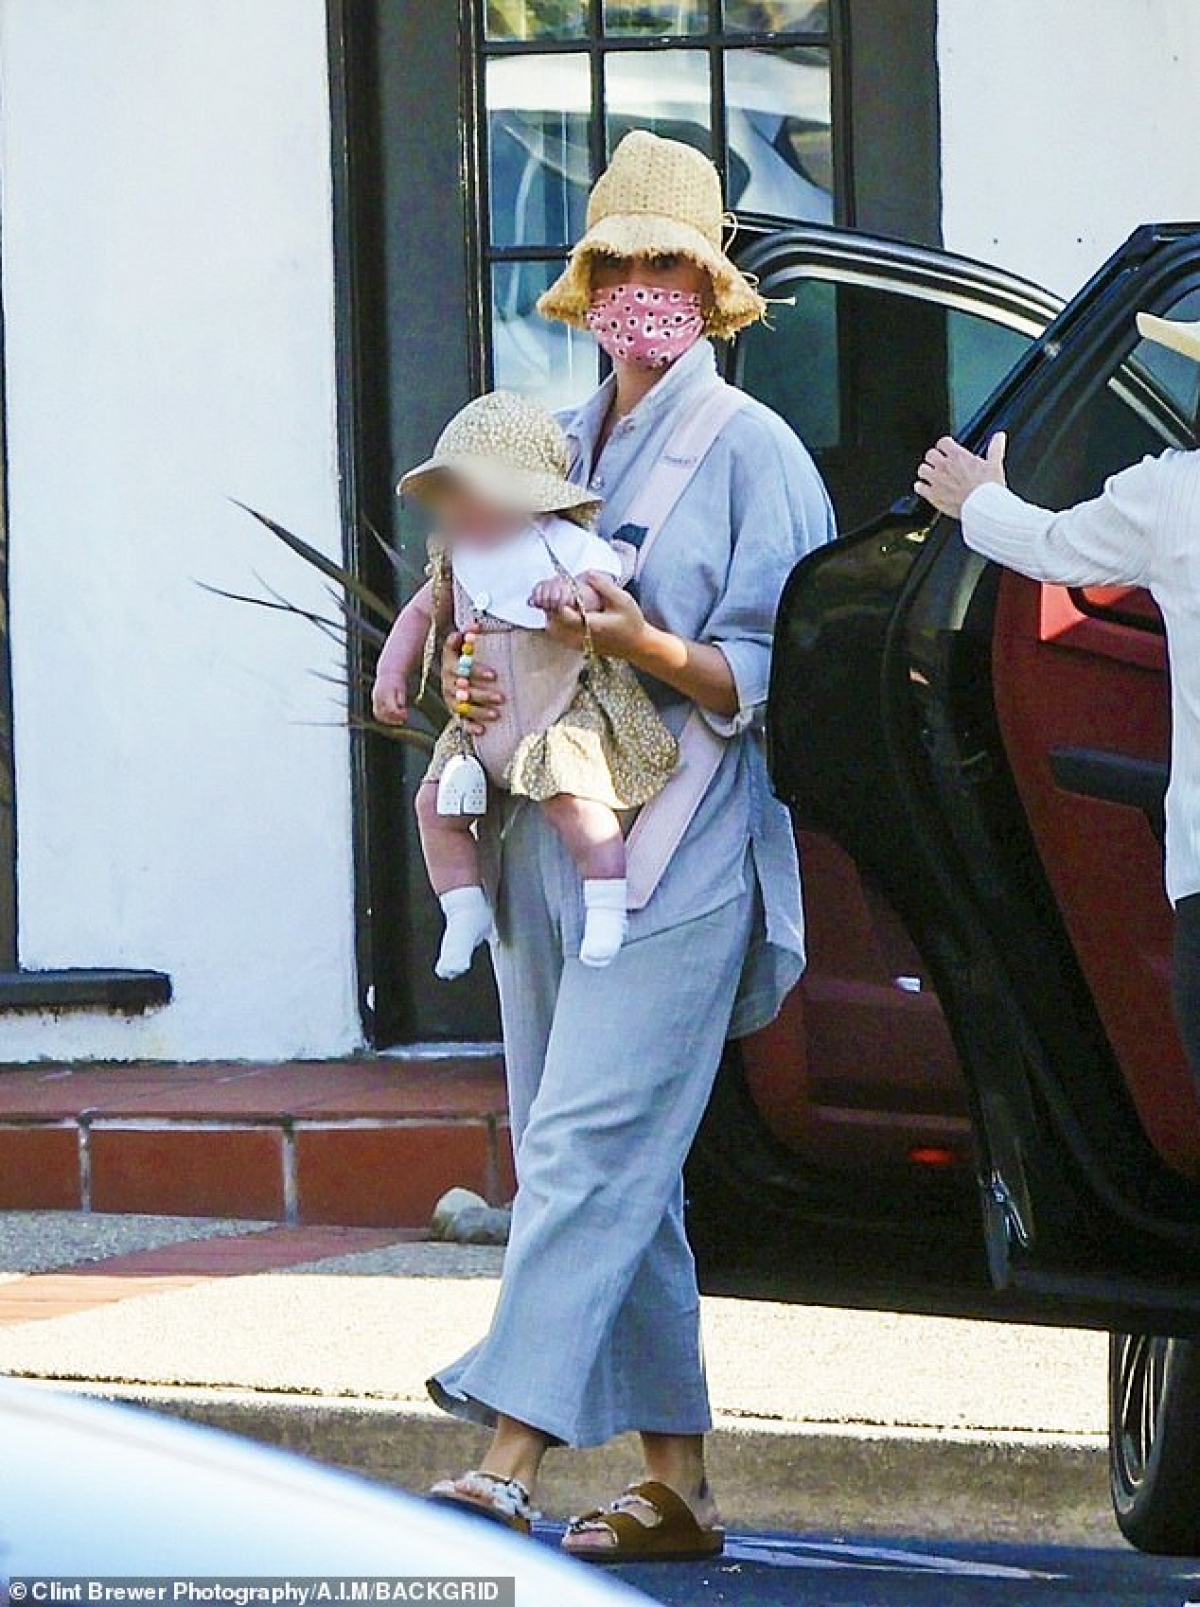 Katy Perry mặc bộ đồ giản dị địu con gái cưng ra phố dạo chơi - Ảnh 3.